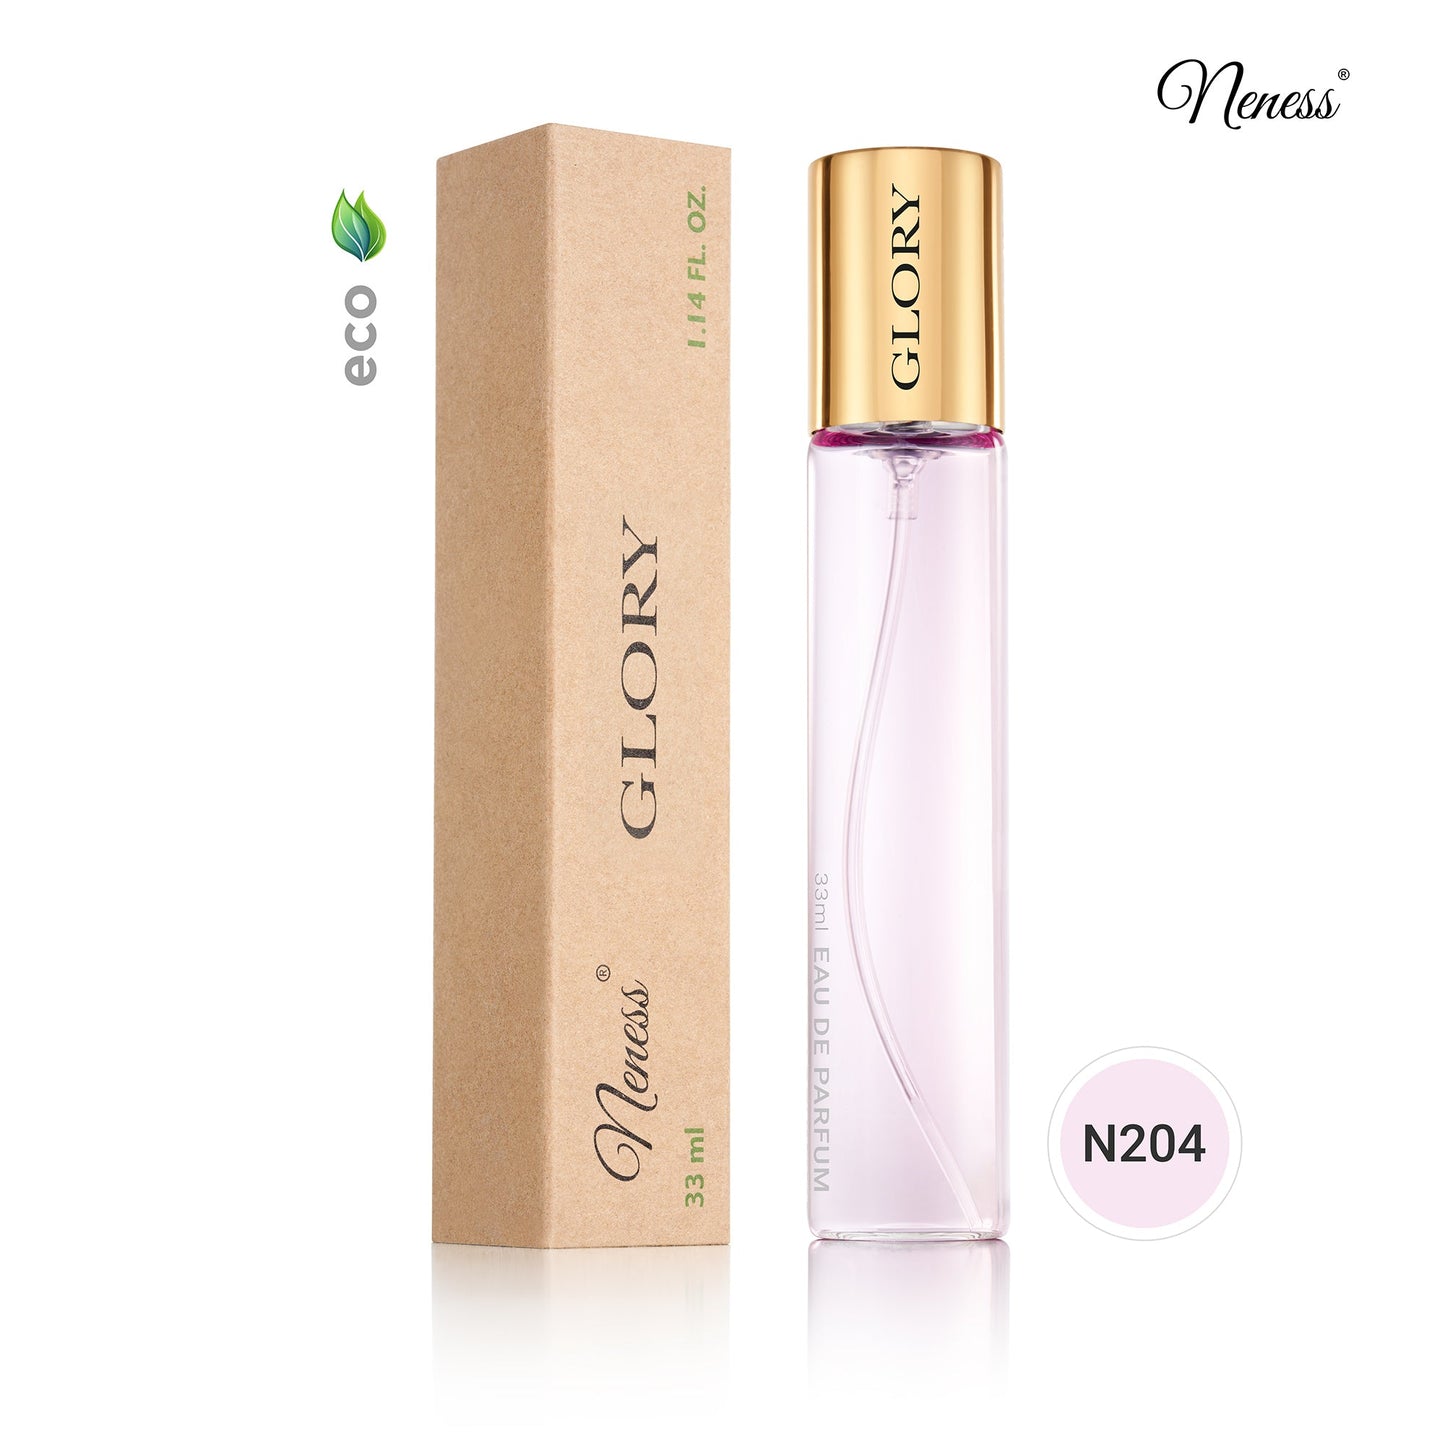 N204. Neness Glory - 33 ml - Perfume For Women